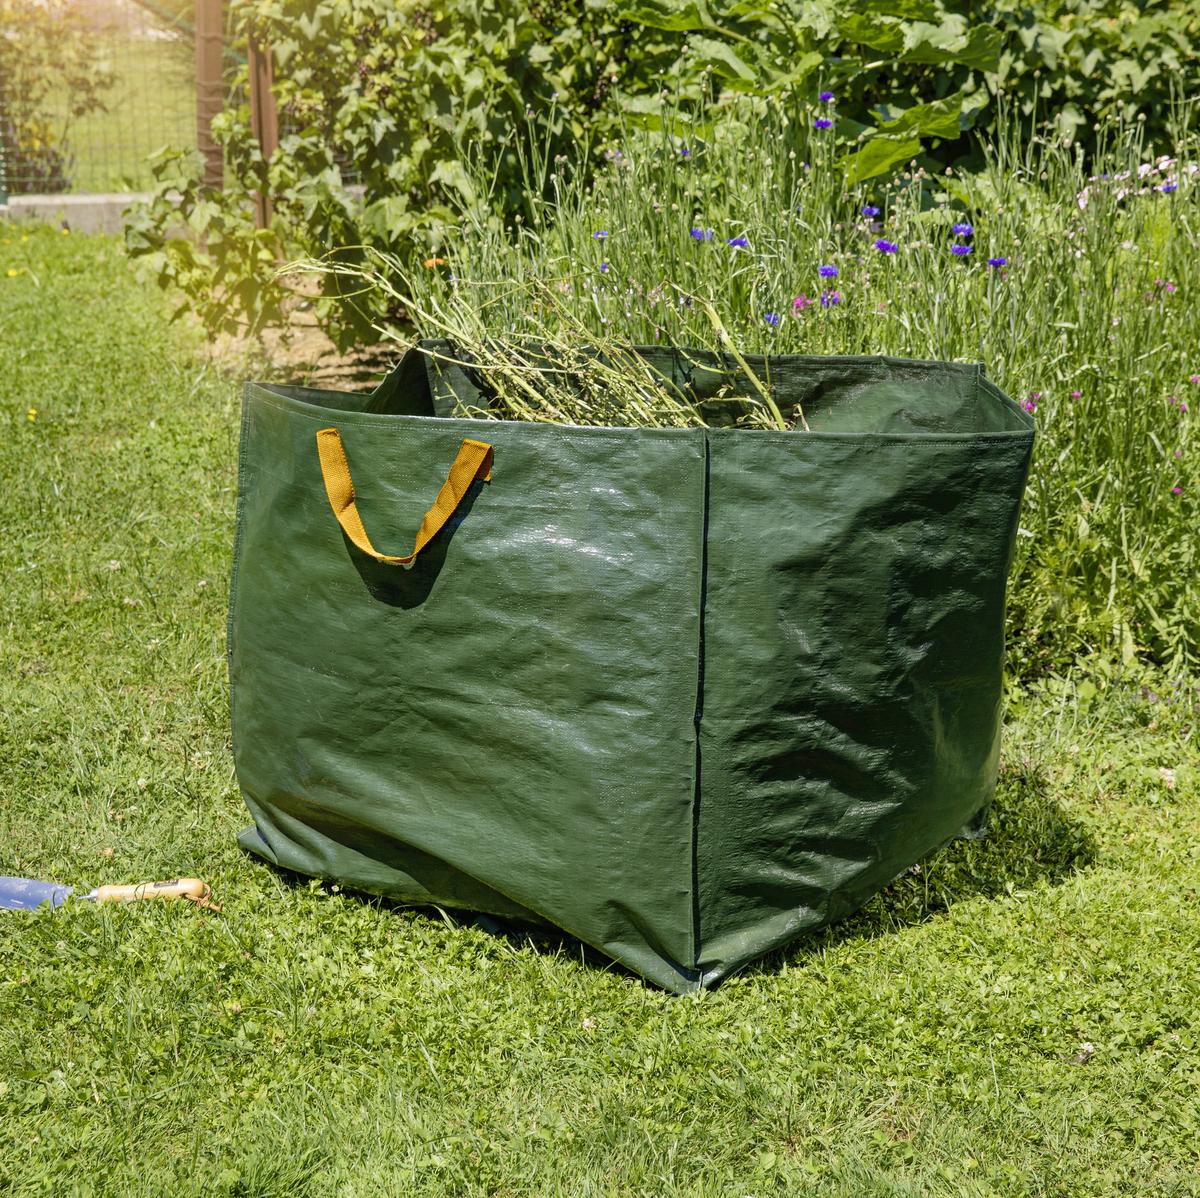 Gartenabfallsack aus grünem Kunststoff » kaufen